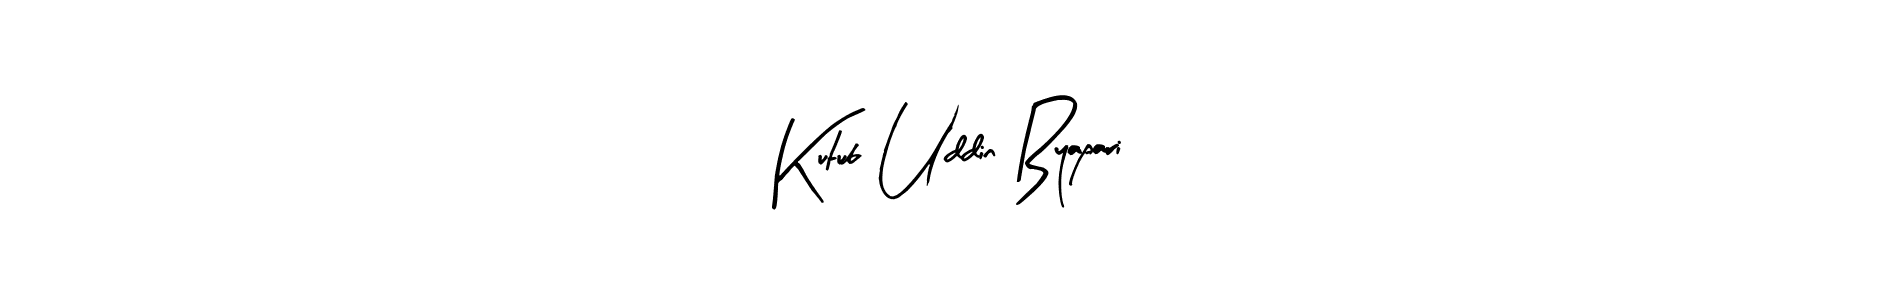 How to Draw Kutub Uddin Byapari signature style? Arty Signature is a latest design signature styles for name Kutub Uddin Byapari. Kutub Uddin Byapari signature style 8 images and pictures png